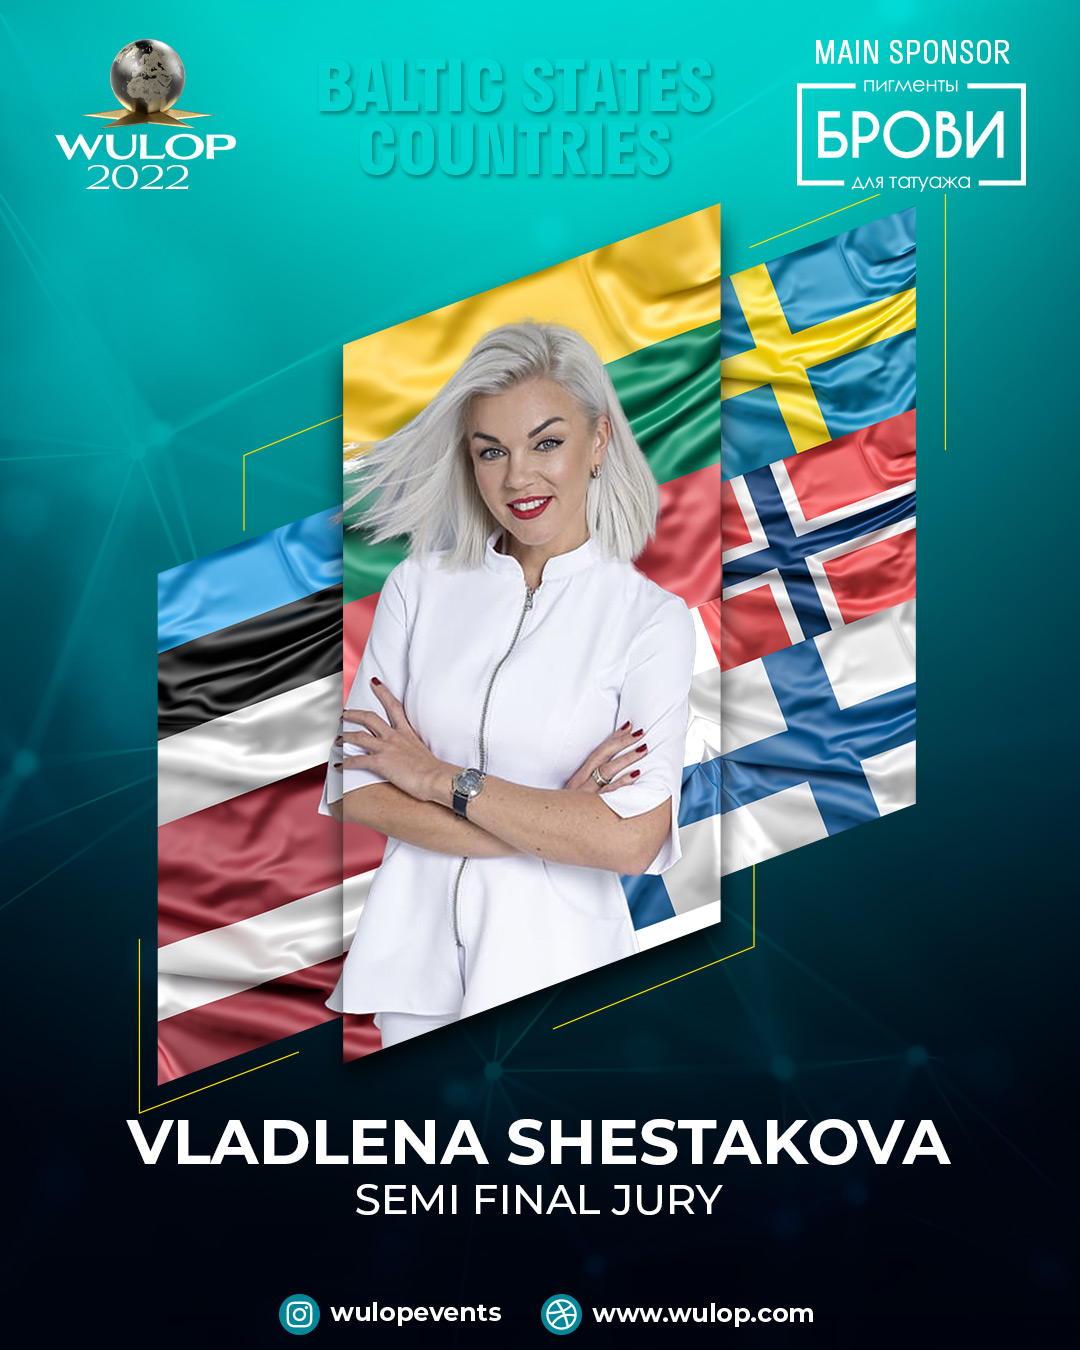 Vladlena Shestakova